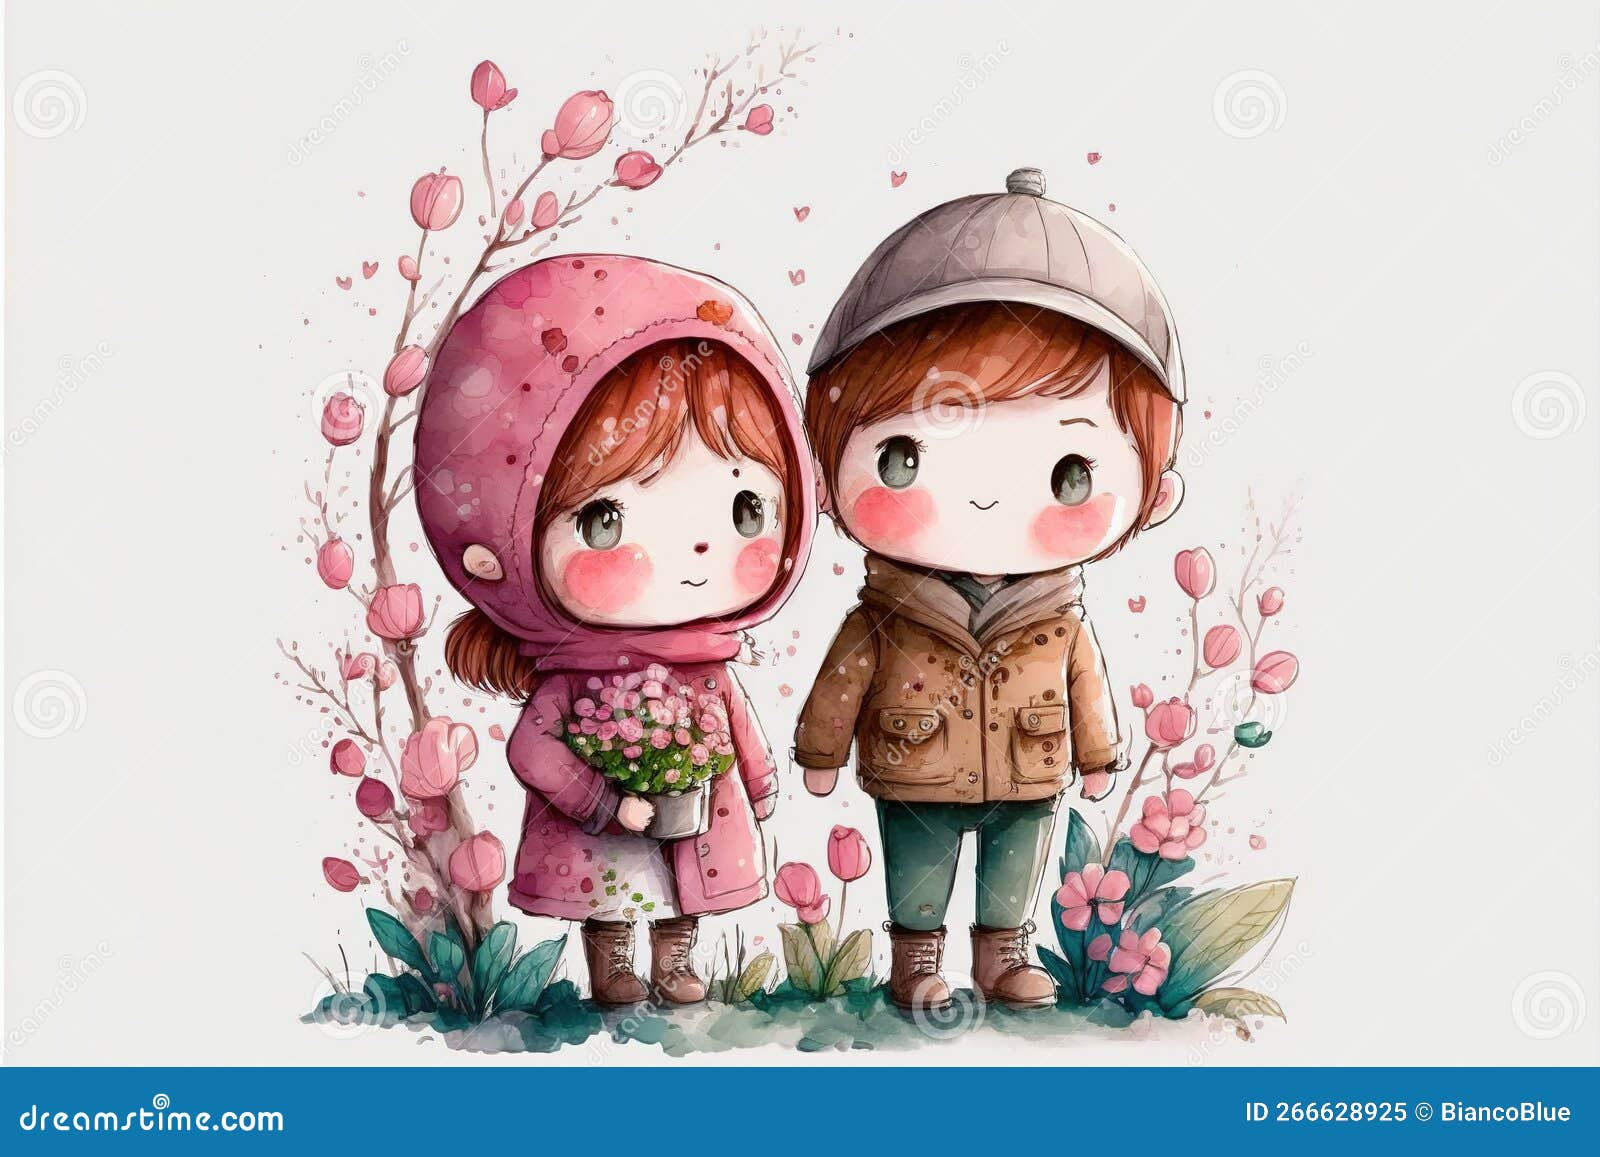 314 Cute Couple Boy Girl Cartoon Stock Photos - Free & Royalty ...